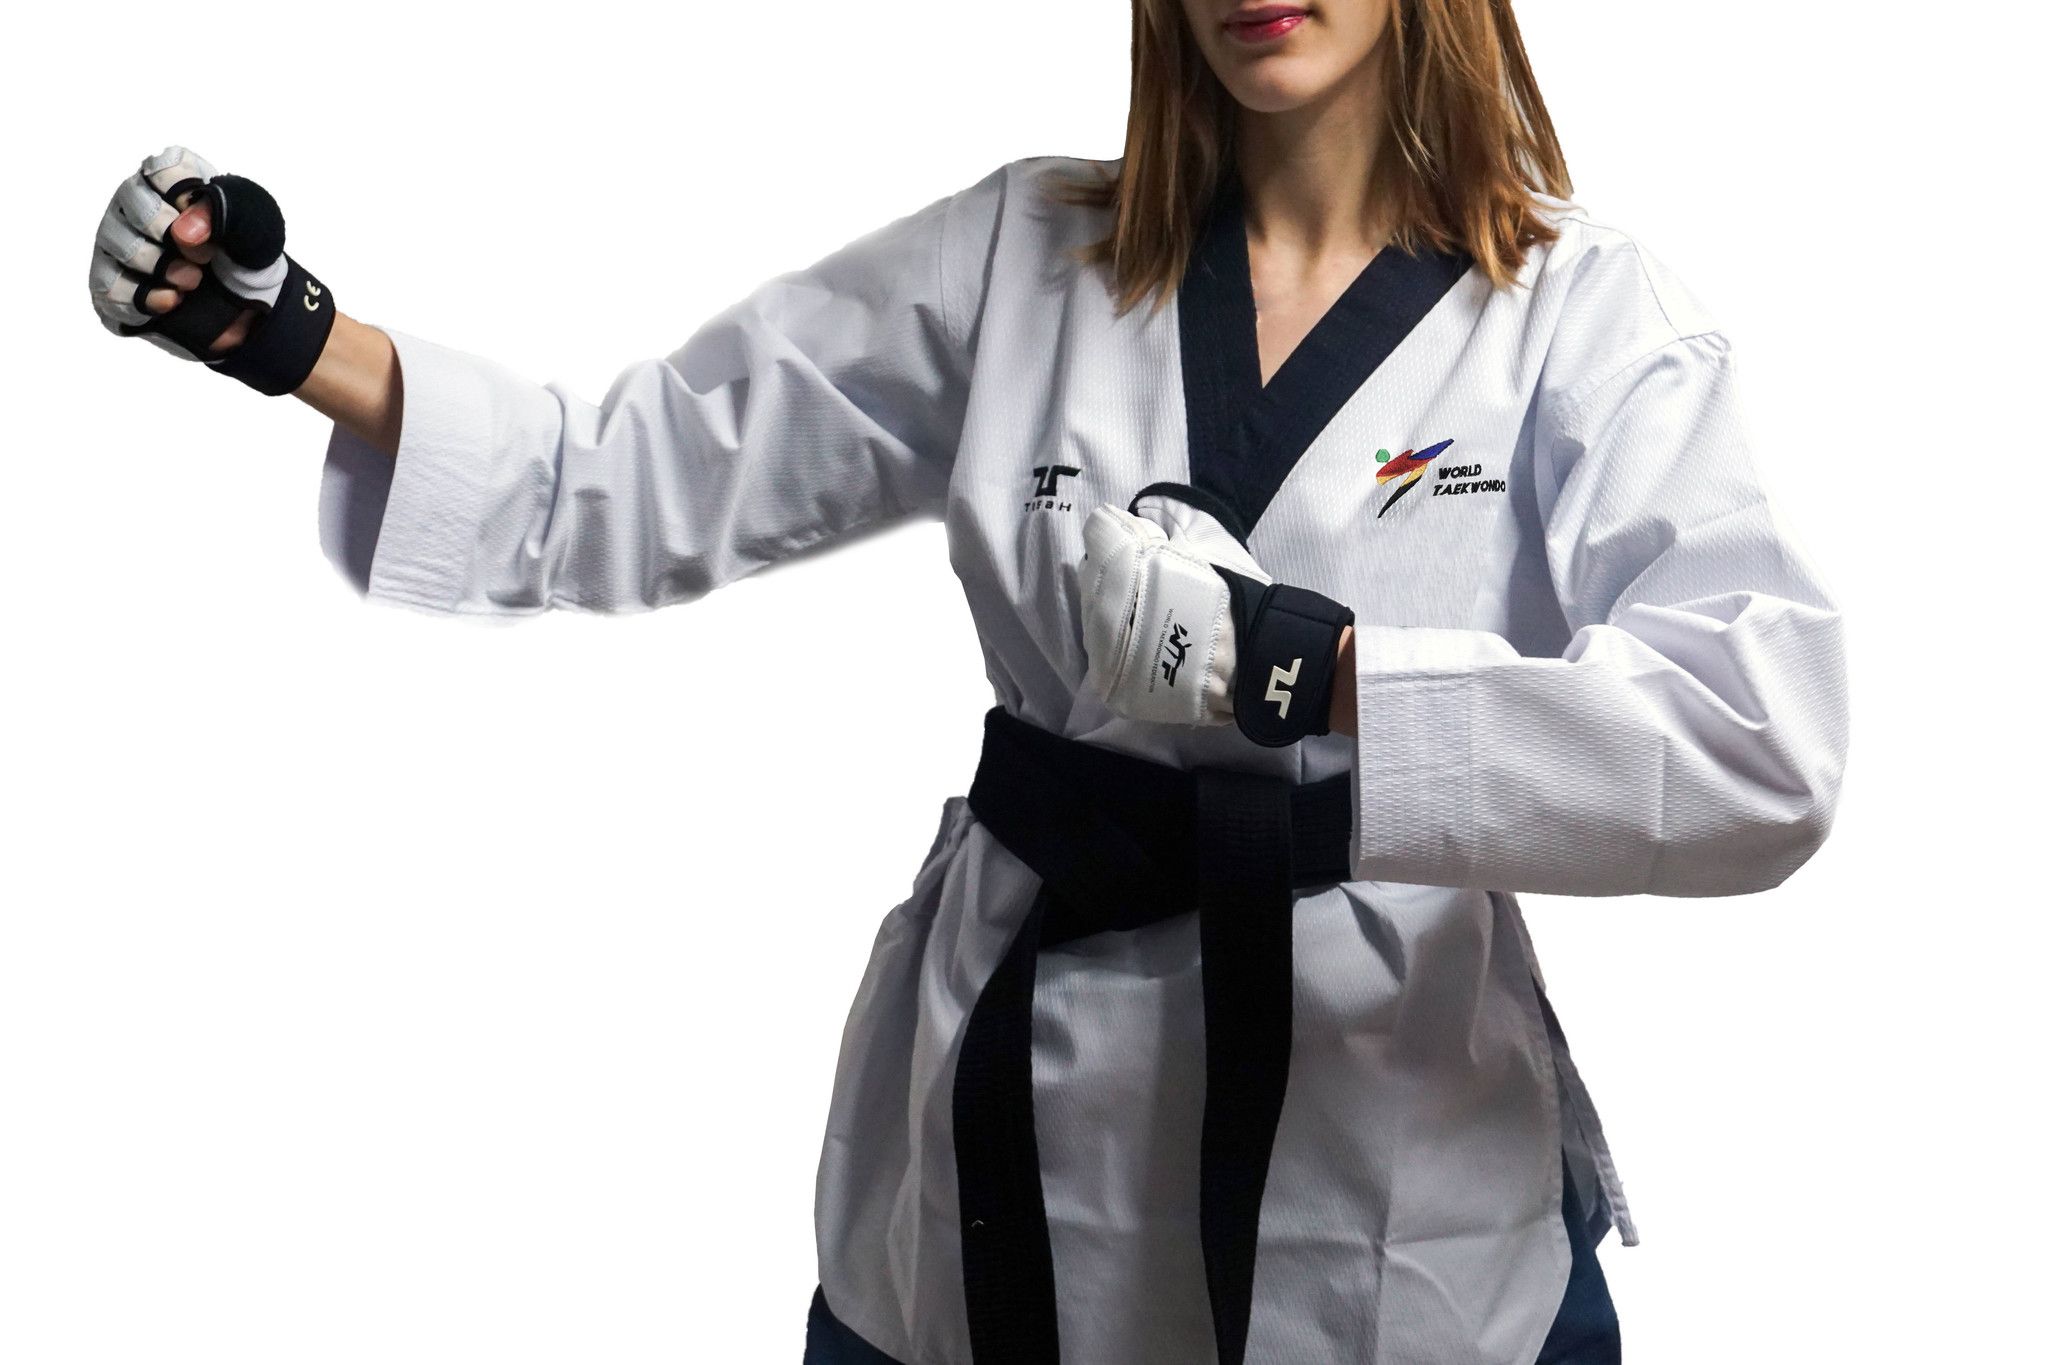 Poomsae Professional Femminile Tusah per Taekwondo Omologato WT Made in Korea per forme e competizioni